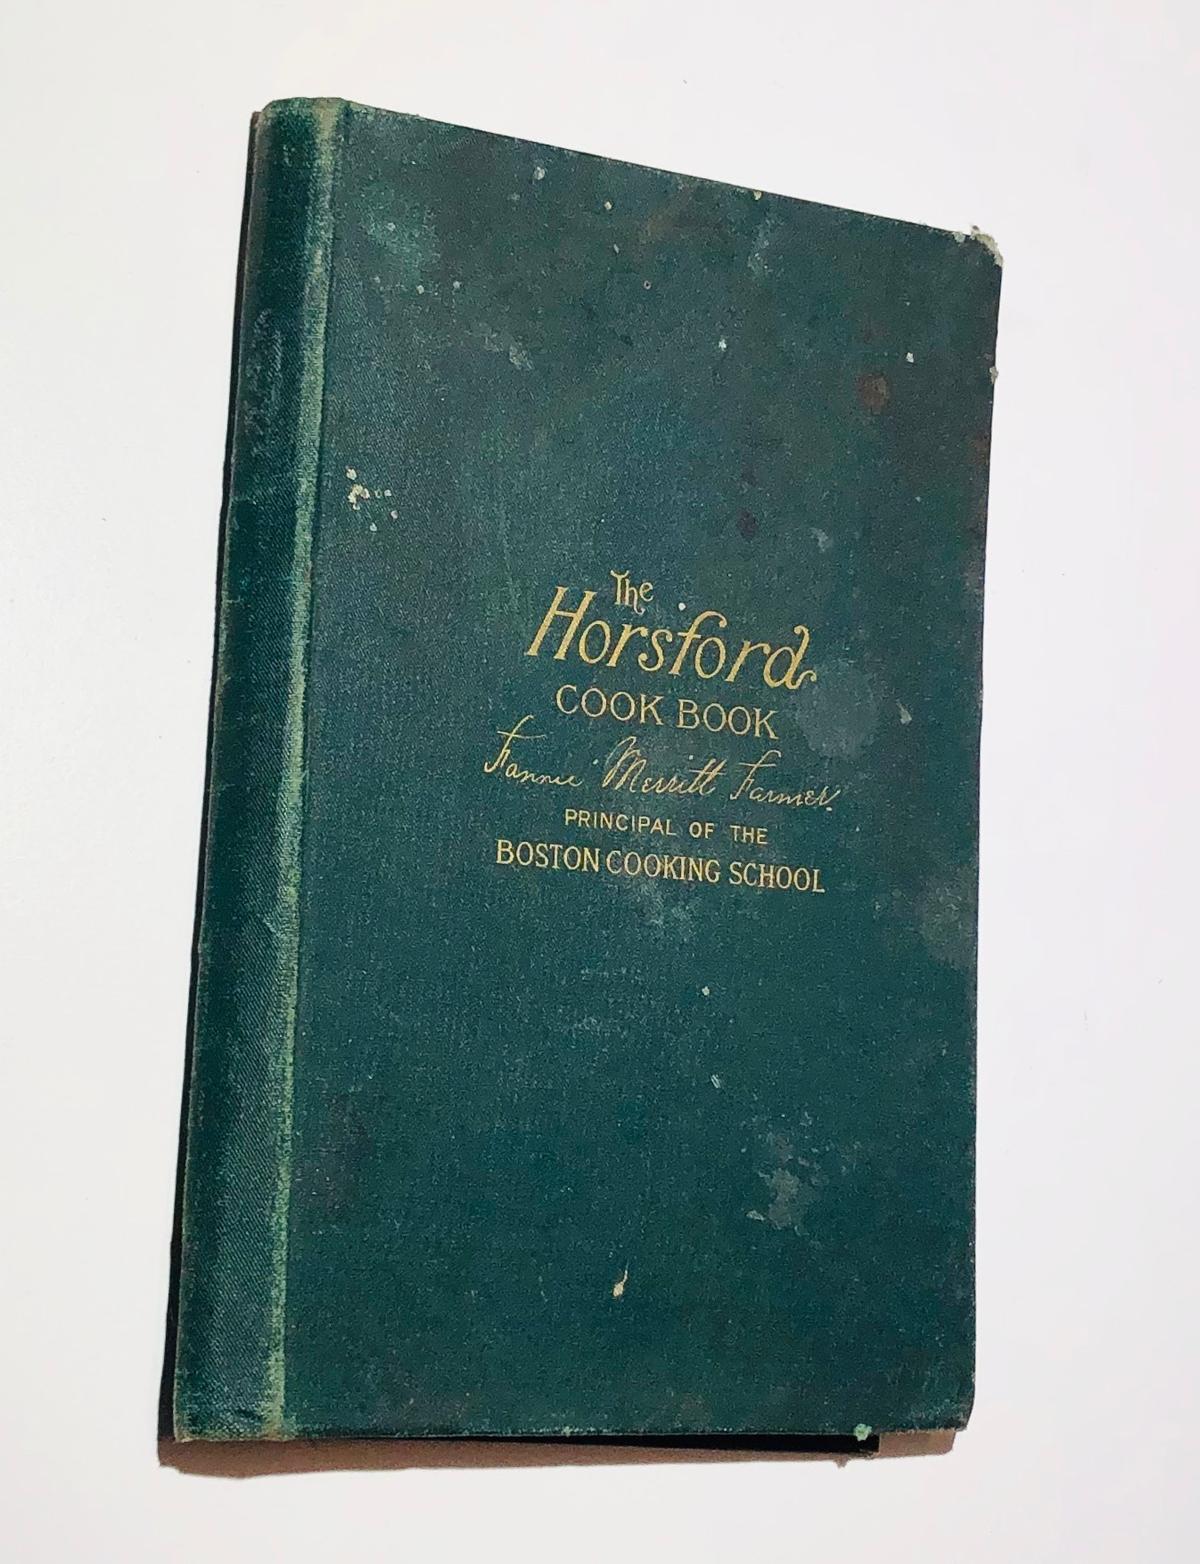 The HORSFORD Cook Book by Fannie Merritt Farmer (1895)